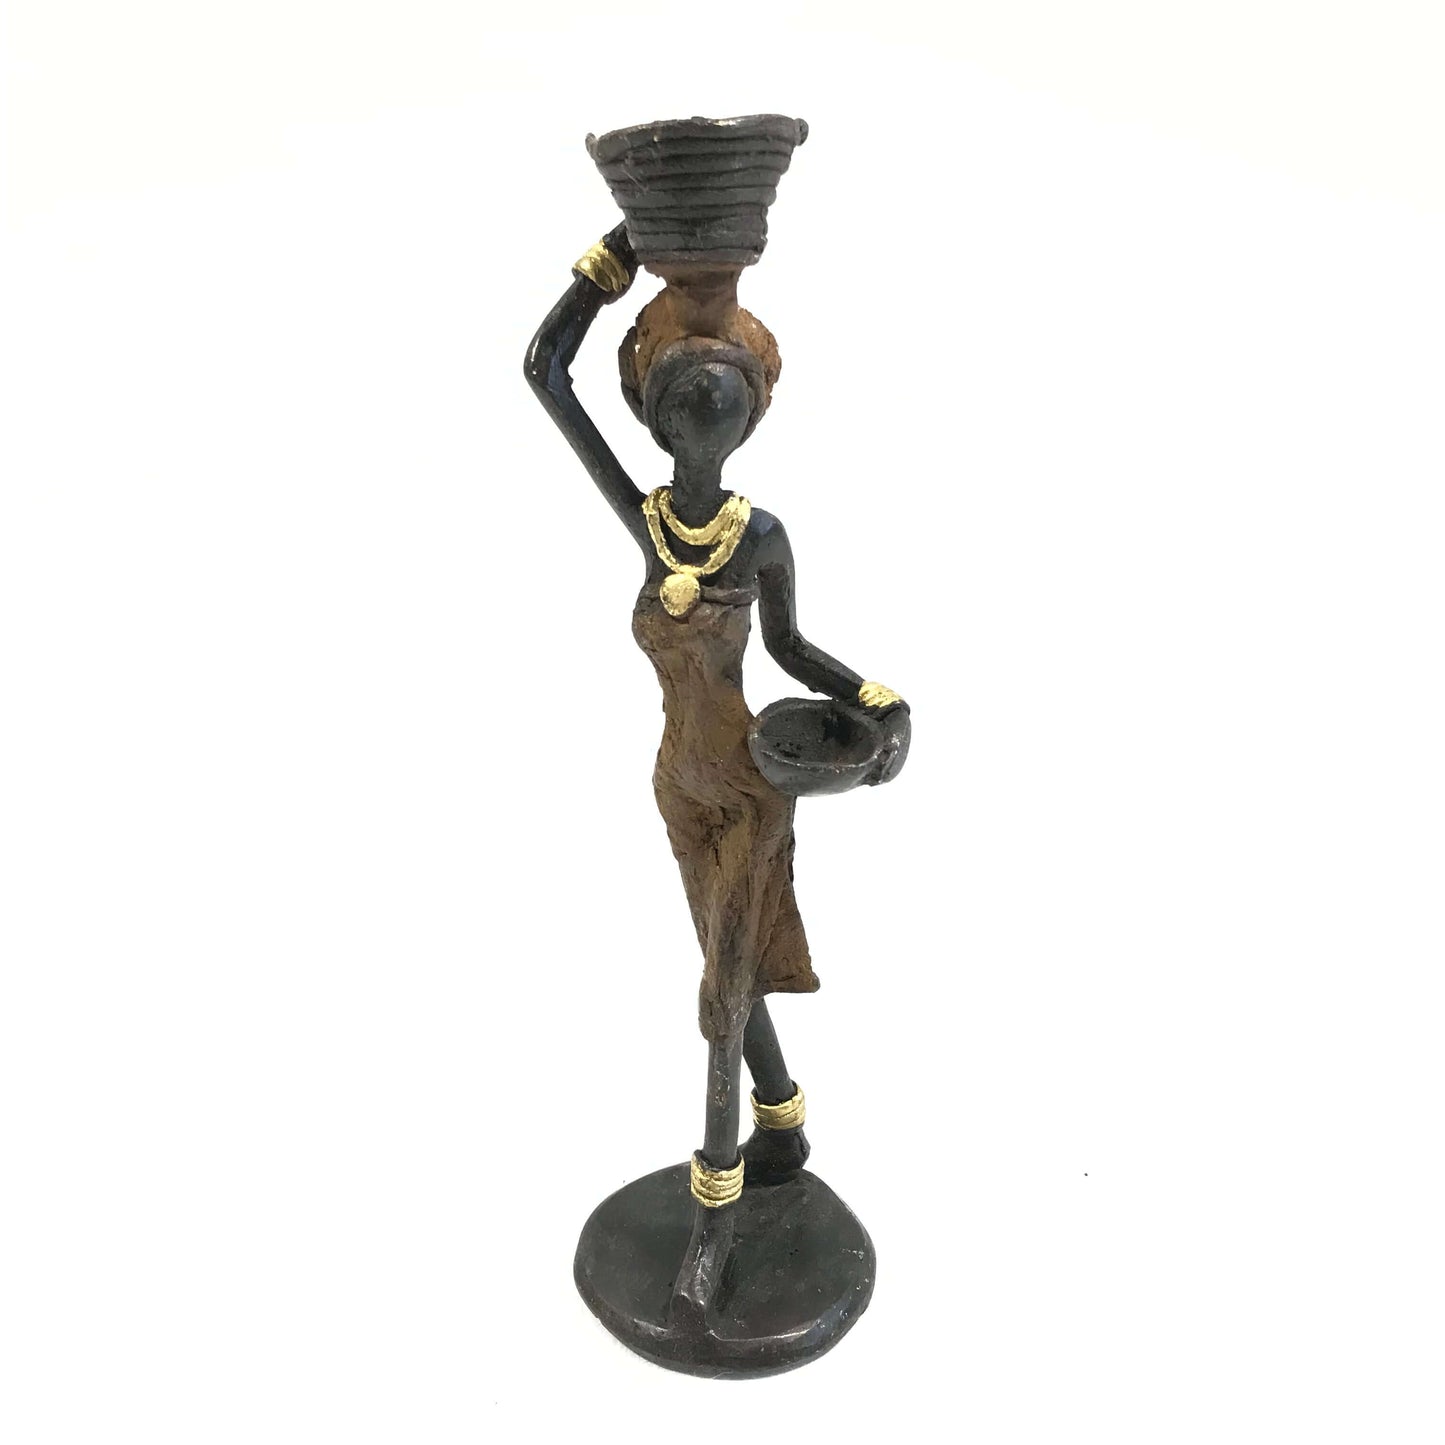 Sculpture en bronze "Femme et bols" by Adama | 27cm